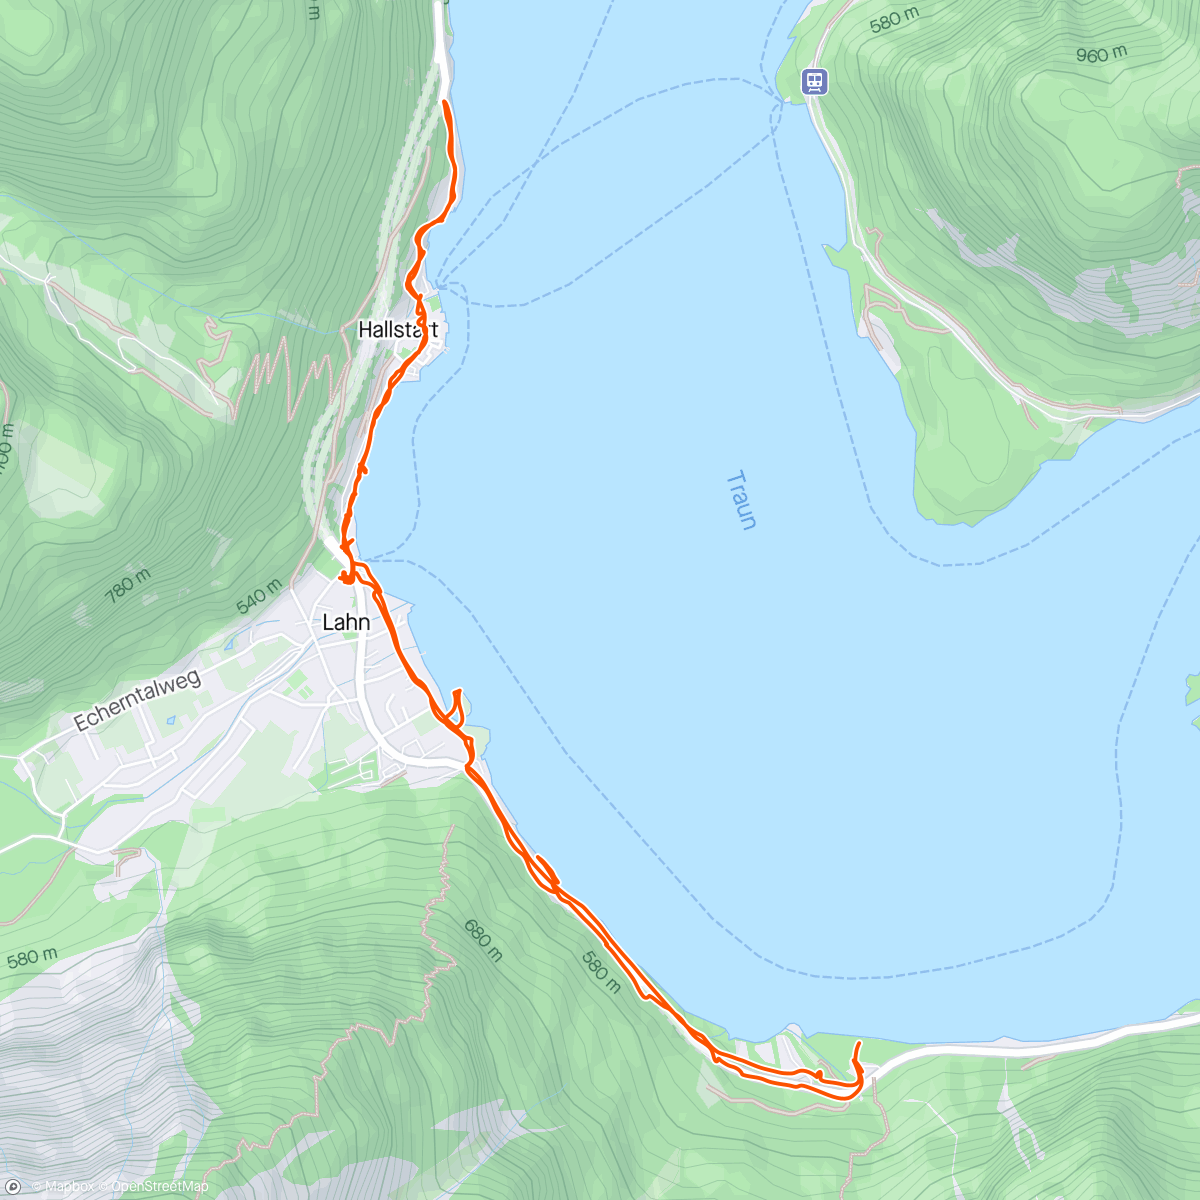 Mapa de la actividad, Hallstatt